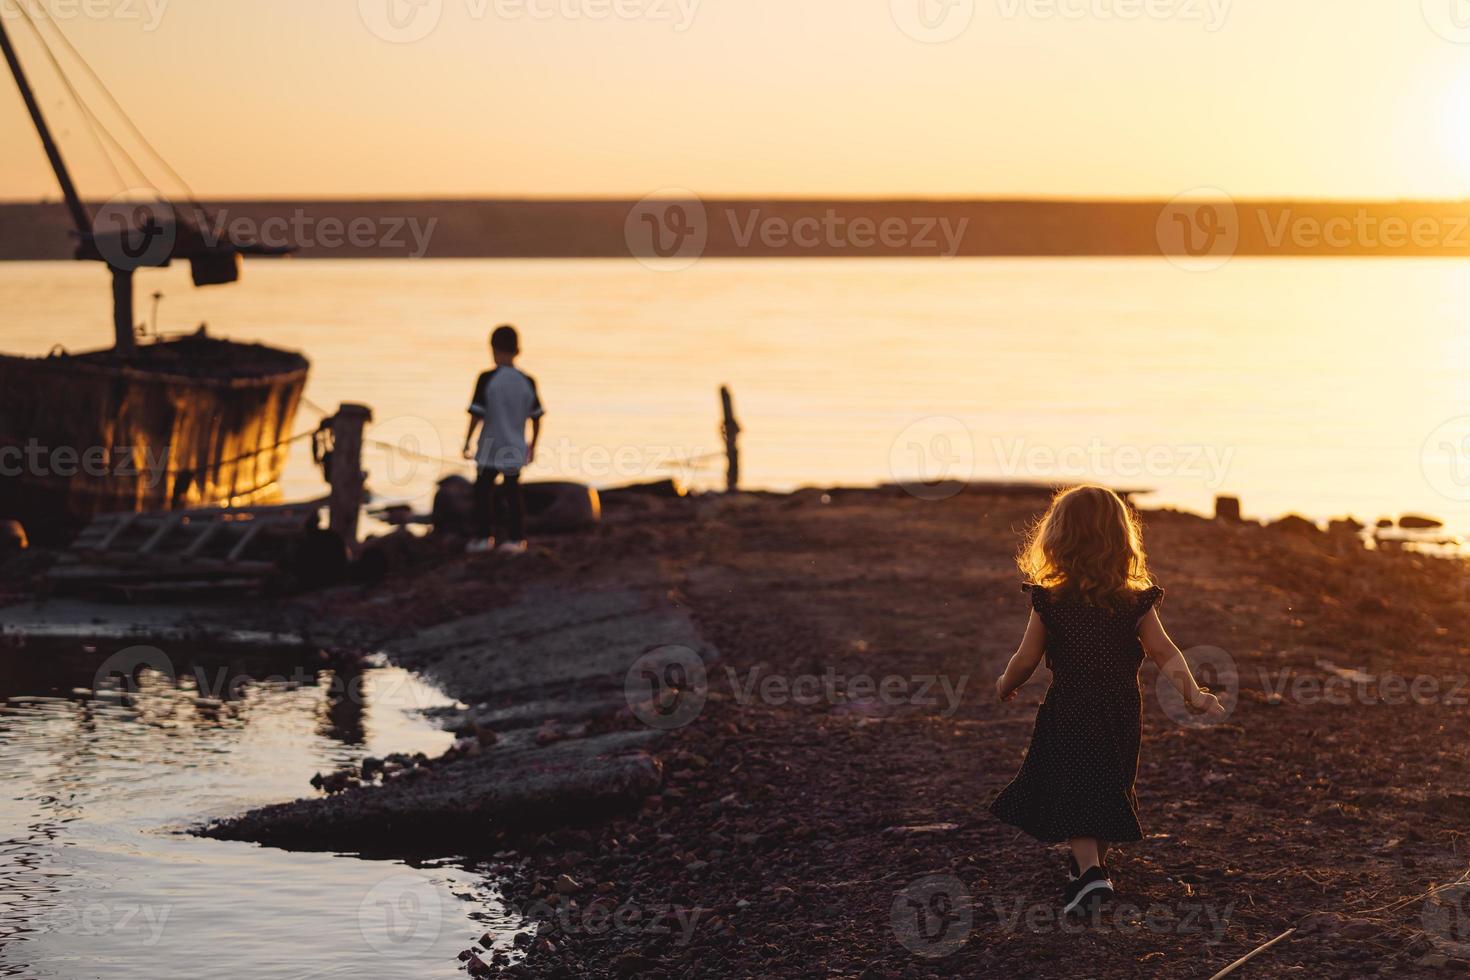 Two children walk along the beach, summer evening photo